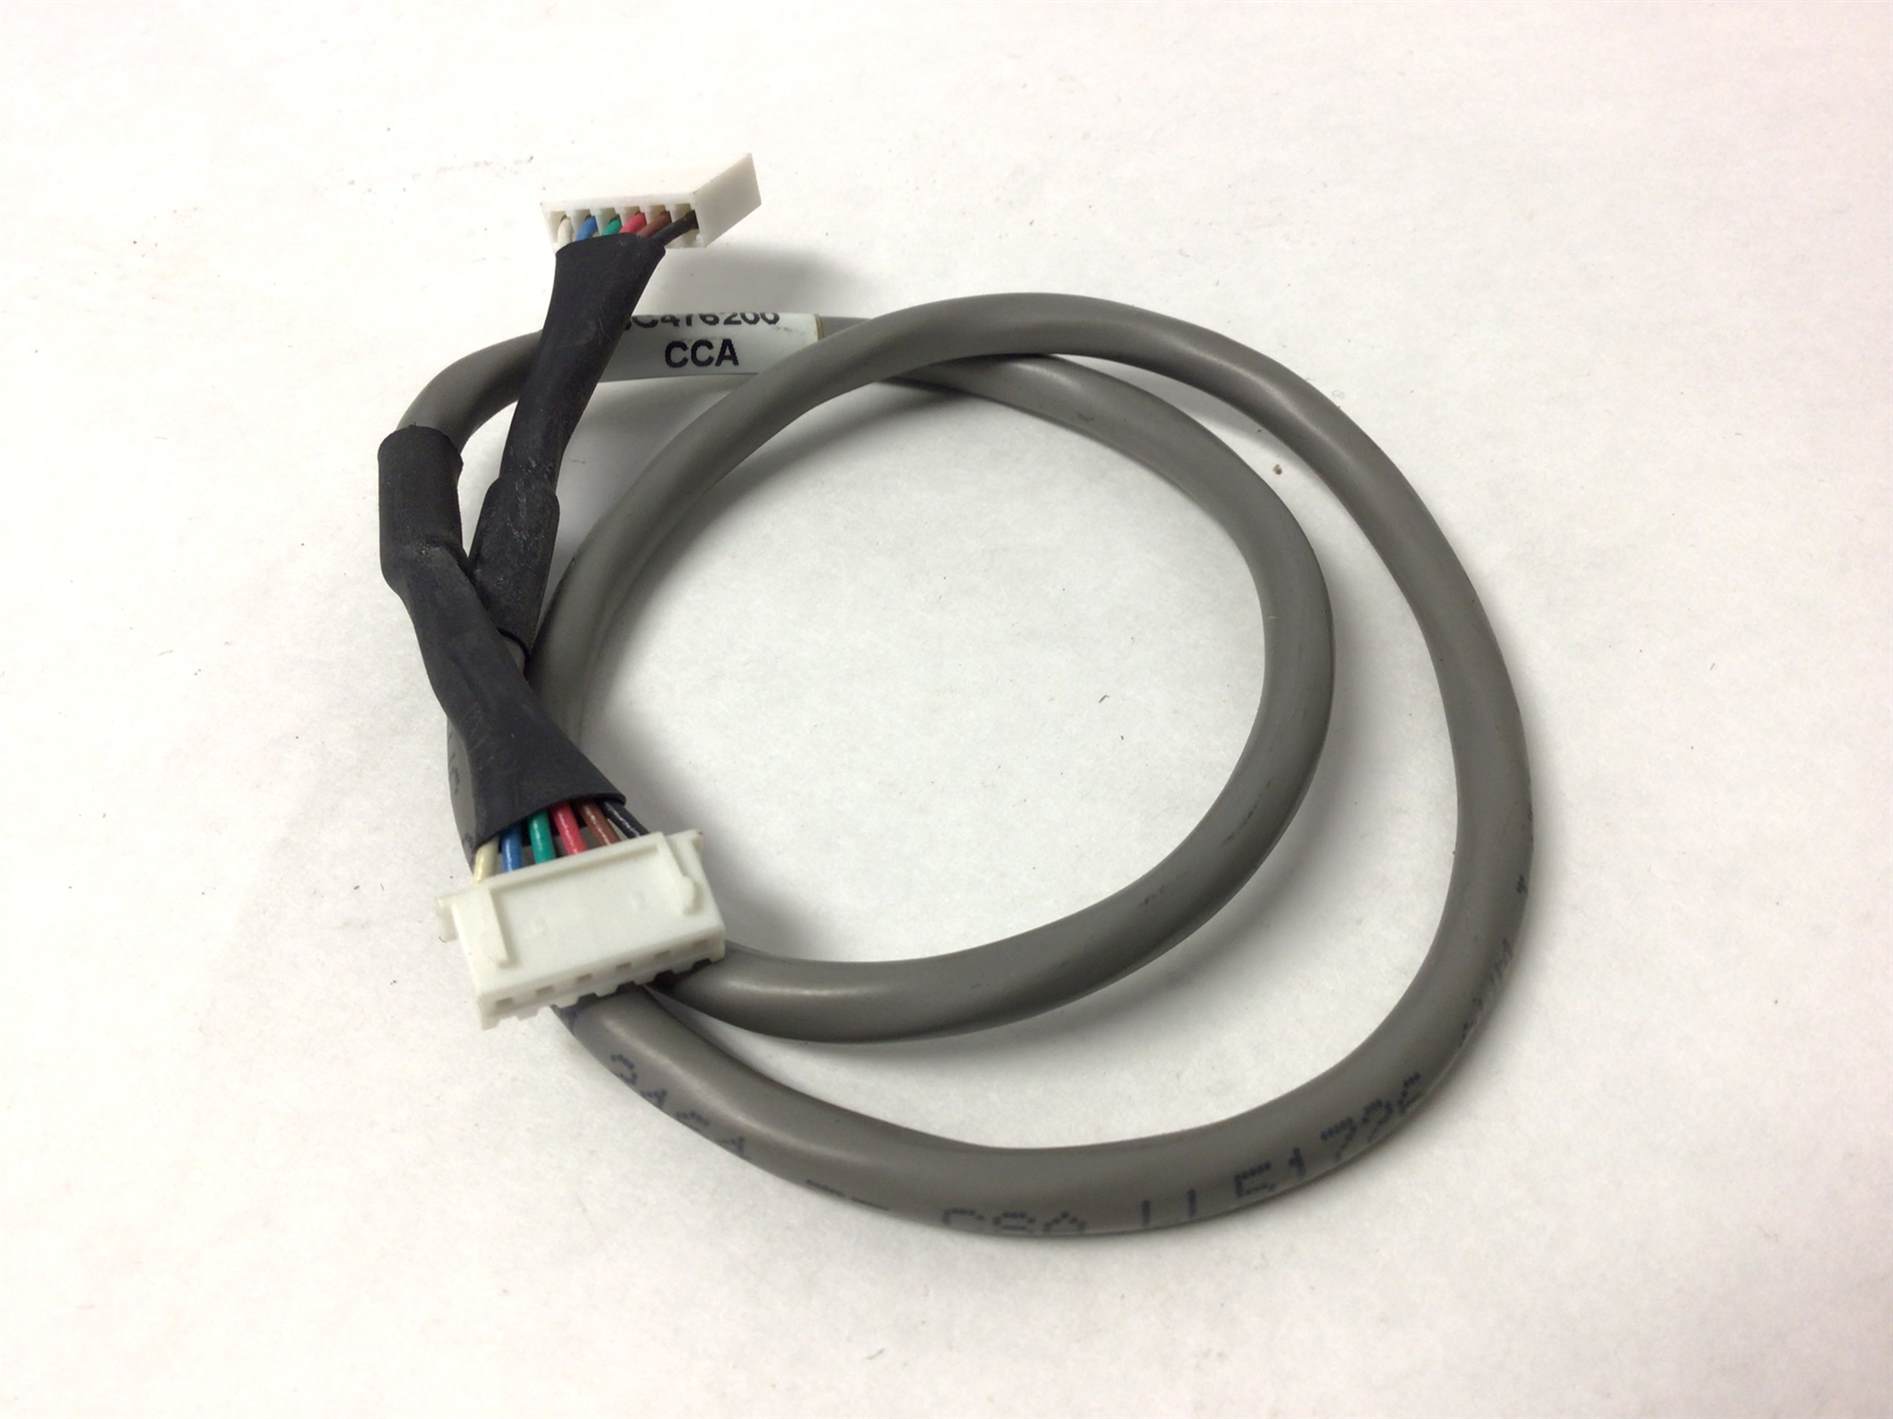 Midbar Keypad Cable (Used)